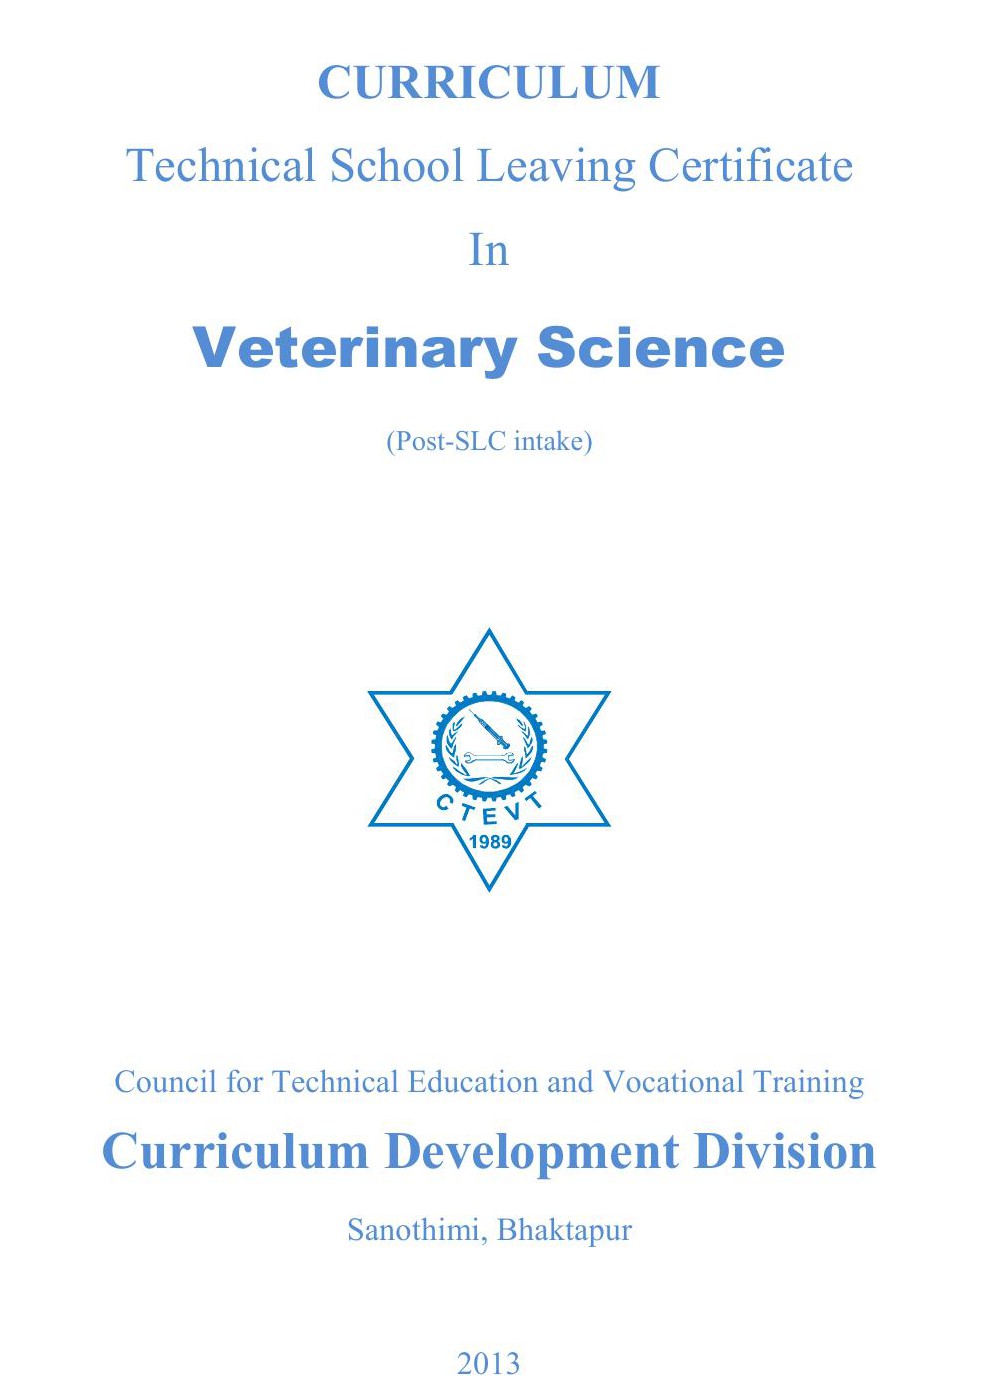 TSLC in Veterinary Science Post SLC, 2013